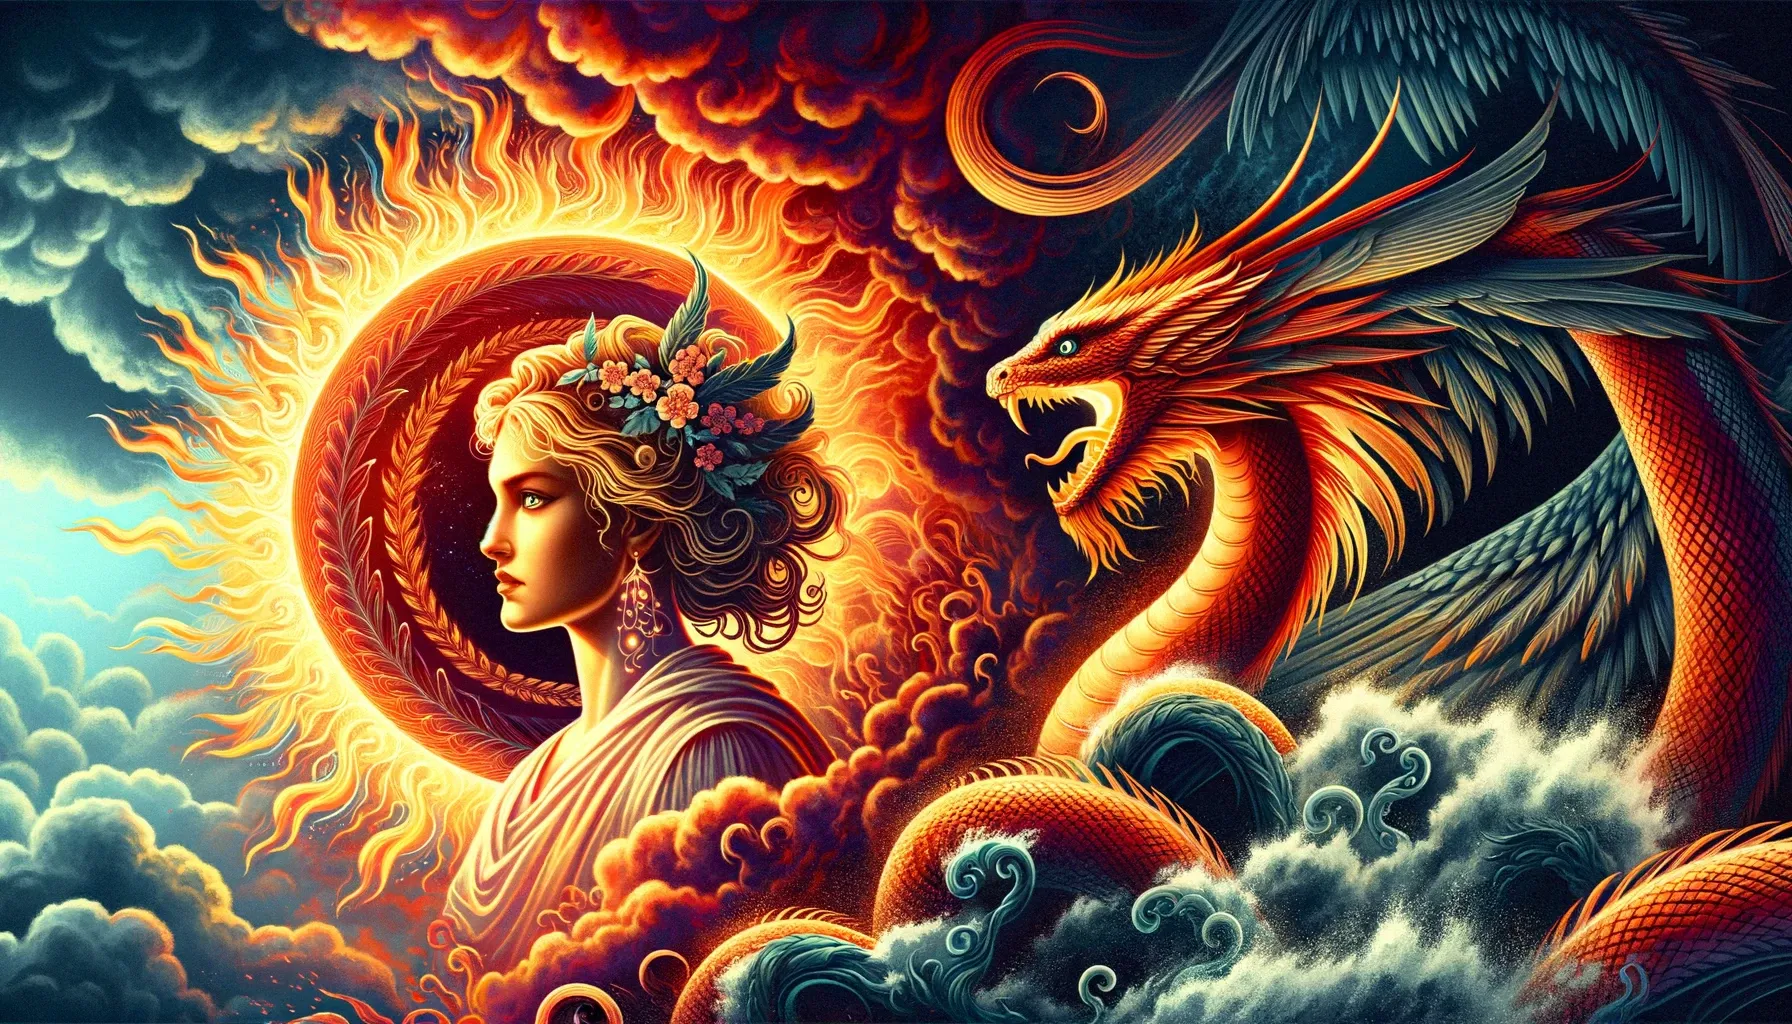 Mari, la diosa de la mitología vasca, con una aura de fuego, junto a Sugaar, representado como una serpiente o dragón, bajo un cielo tormentoso, simbolizando su poder combinado sobre los elementos naturales.